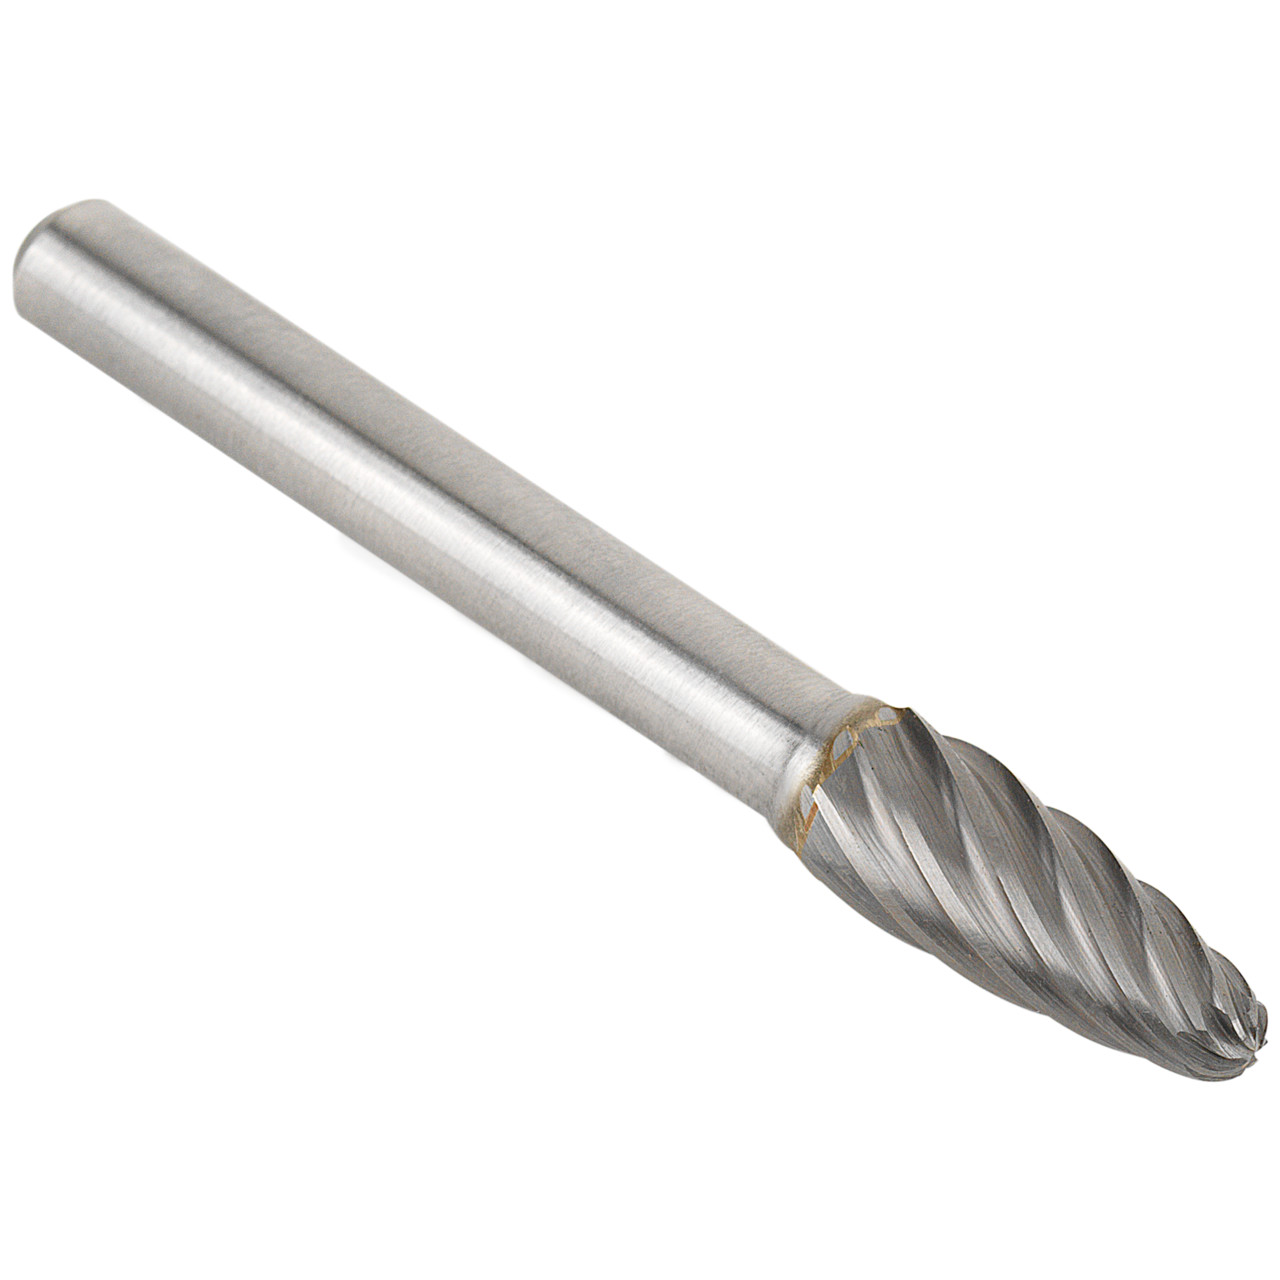 TYROLIT hardmetalen frees DxT-SxL 10x19-6x64 Voor roestvrij staal, vorm: 52RBF - boom, Art. 34213626